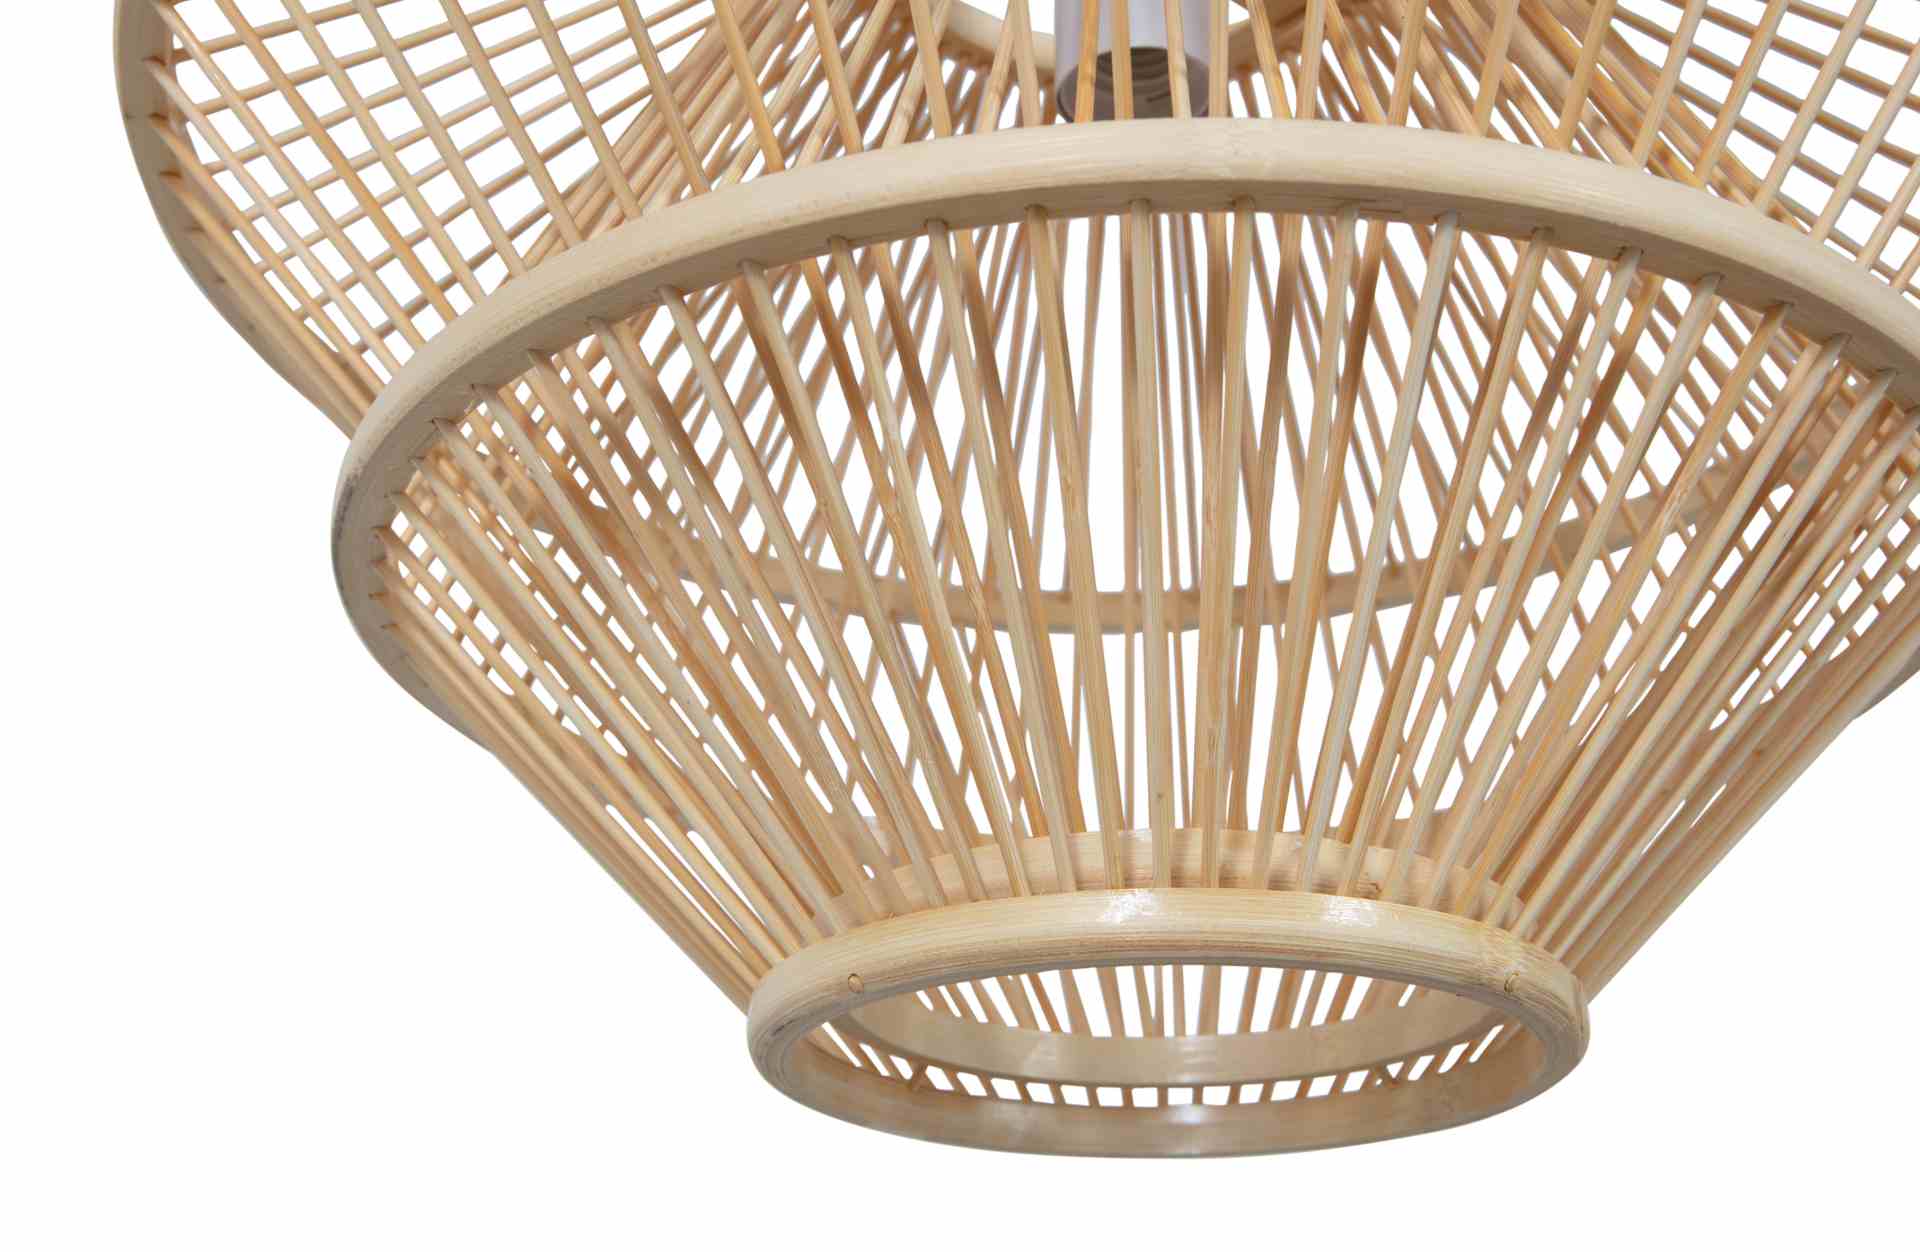 Die Hängelampe Bamboo überzeugt mit ihrem Boho Stil. Gefertigt wurde die Lampe aus Bambus, welches einen natürlichen Farbton besitzt.